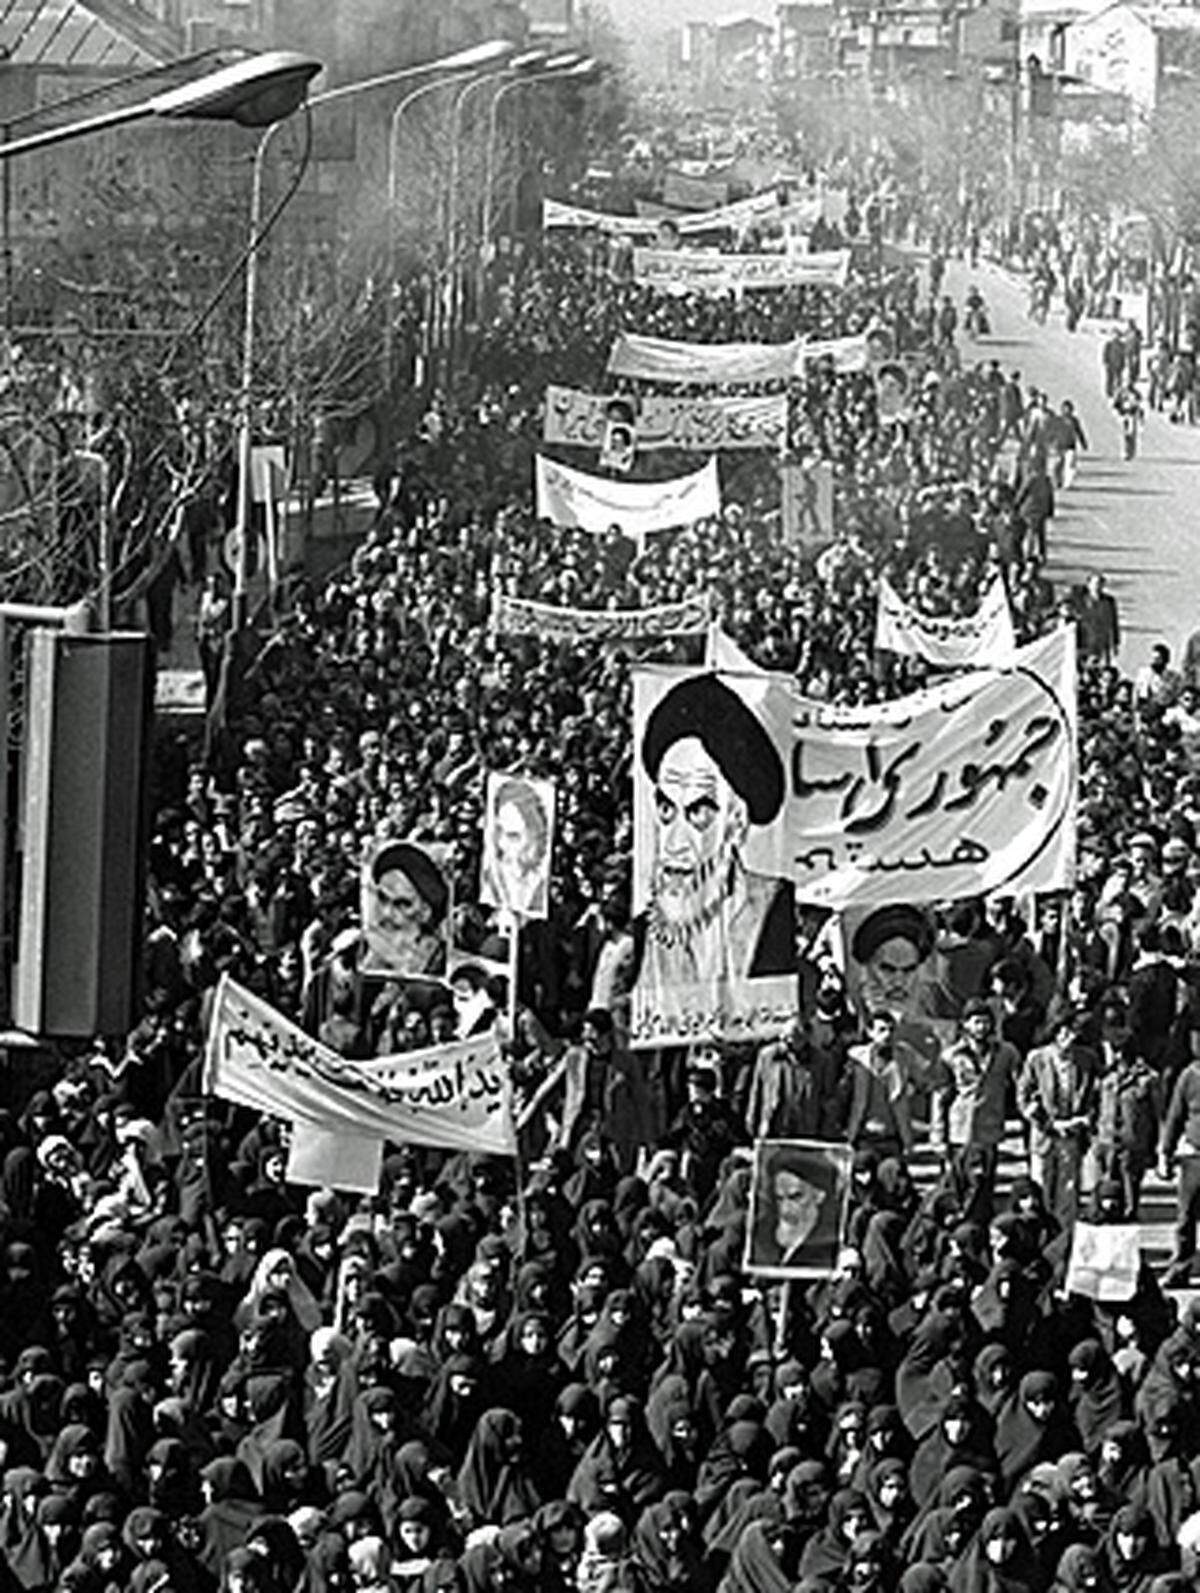 Vor 32 Jahren mobilisierte der schiitische Geistliche Ayatollah Ruhollah Khomeini die Massen gegen den herrschenden Schah Mohammad Reza Pahlevi. Millionen Menschen feierten ihren Helden Khomeini bei seiner Rückkehr aus dem Exil. Er lebte zuvor 15 Jahre in den Ländern Türkei, Irak und Frankreich. Khomeinis Revolution führte zu der Gründung der Islamischen Republik Iran am 1. April 1979.